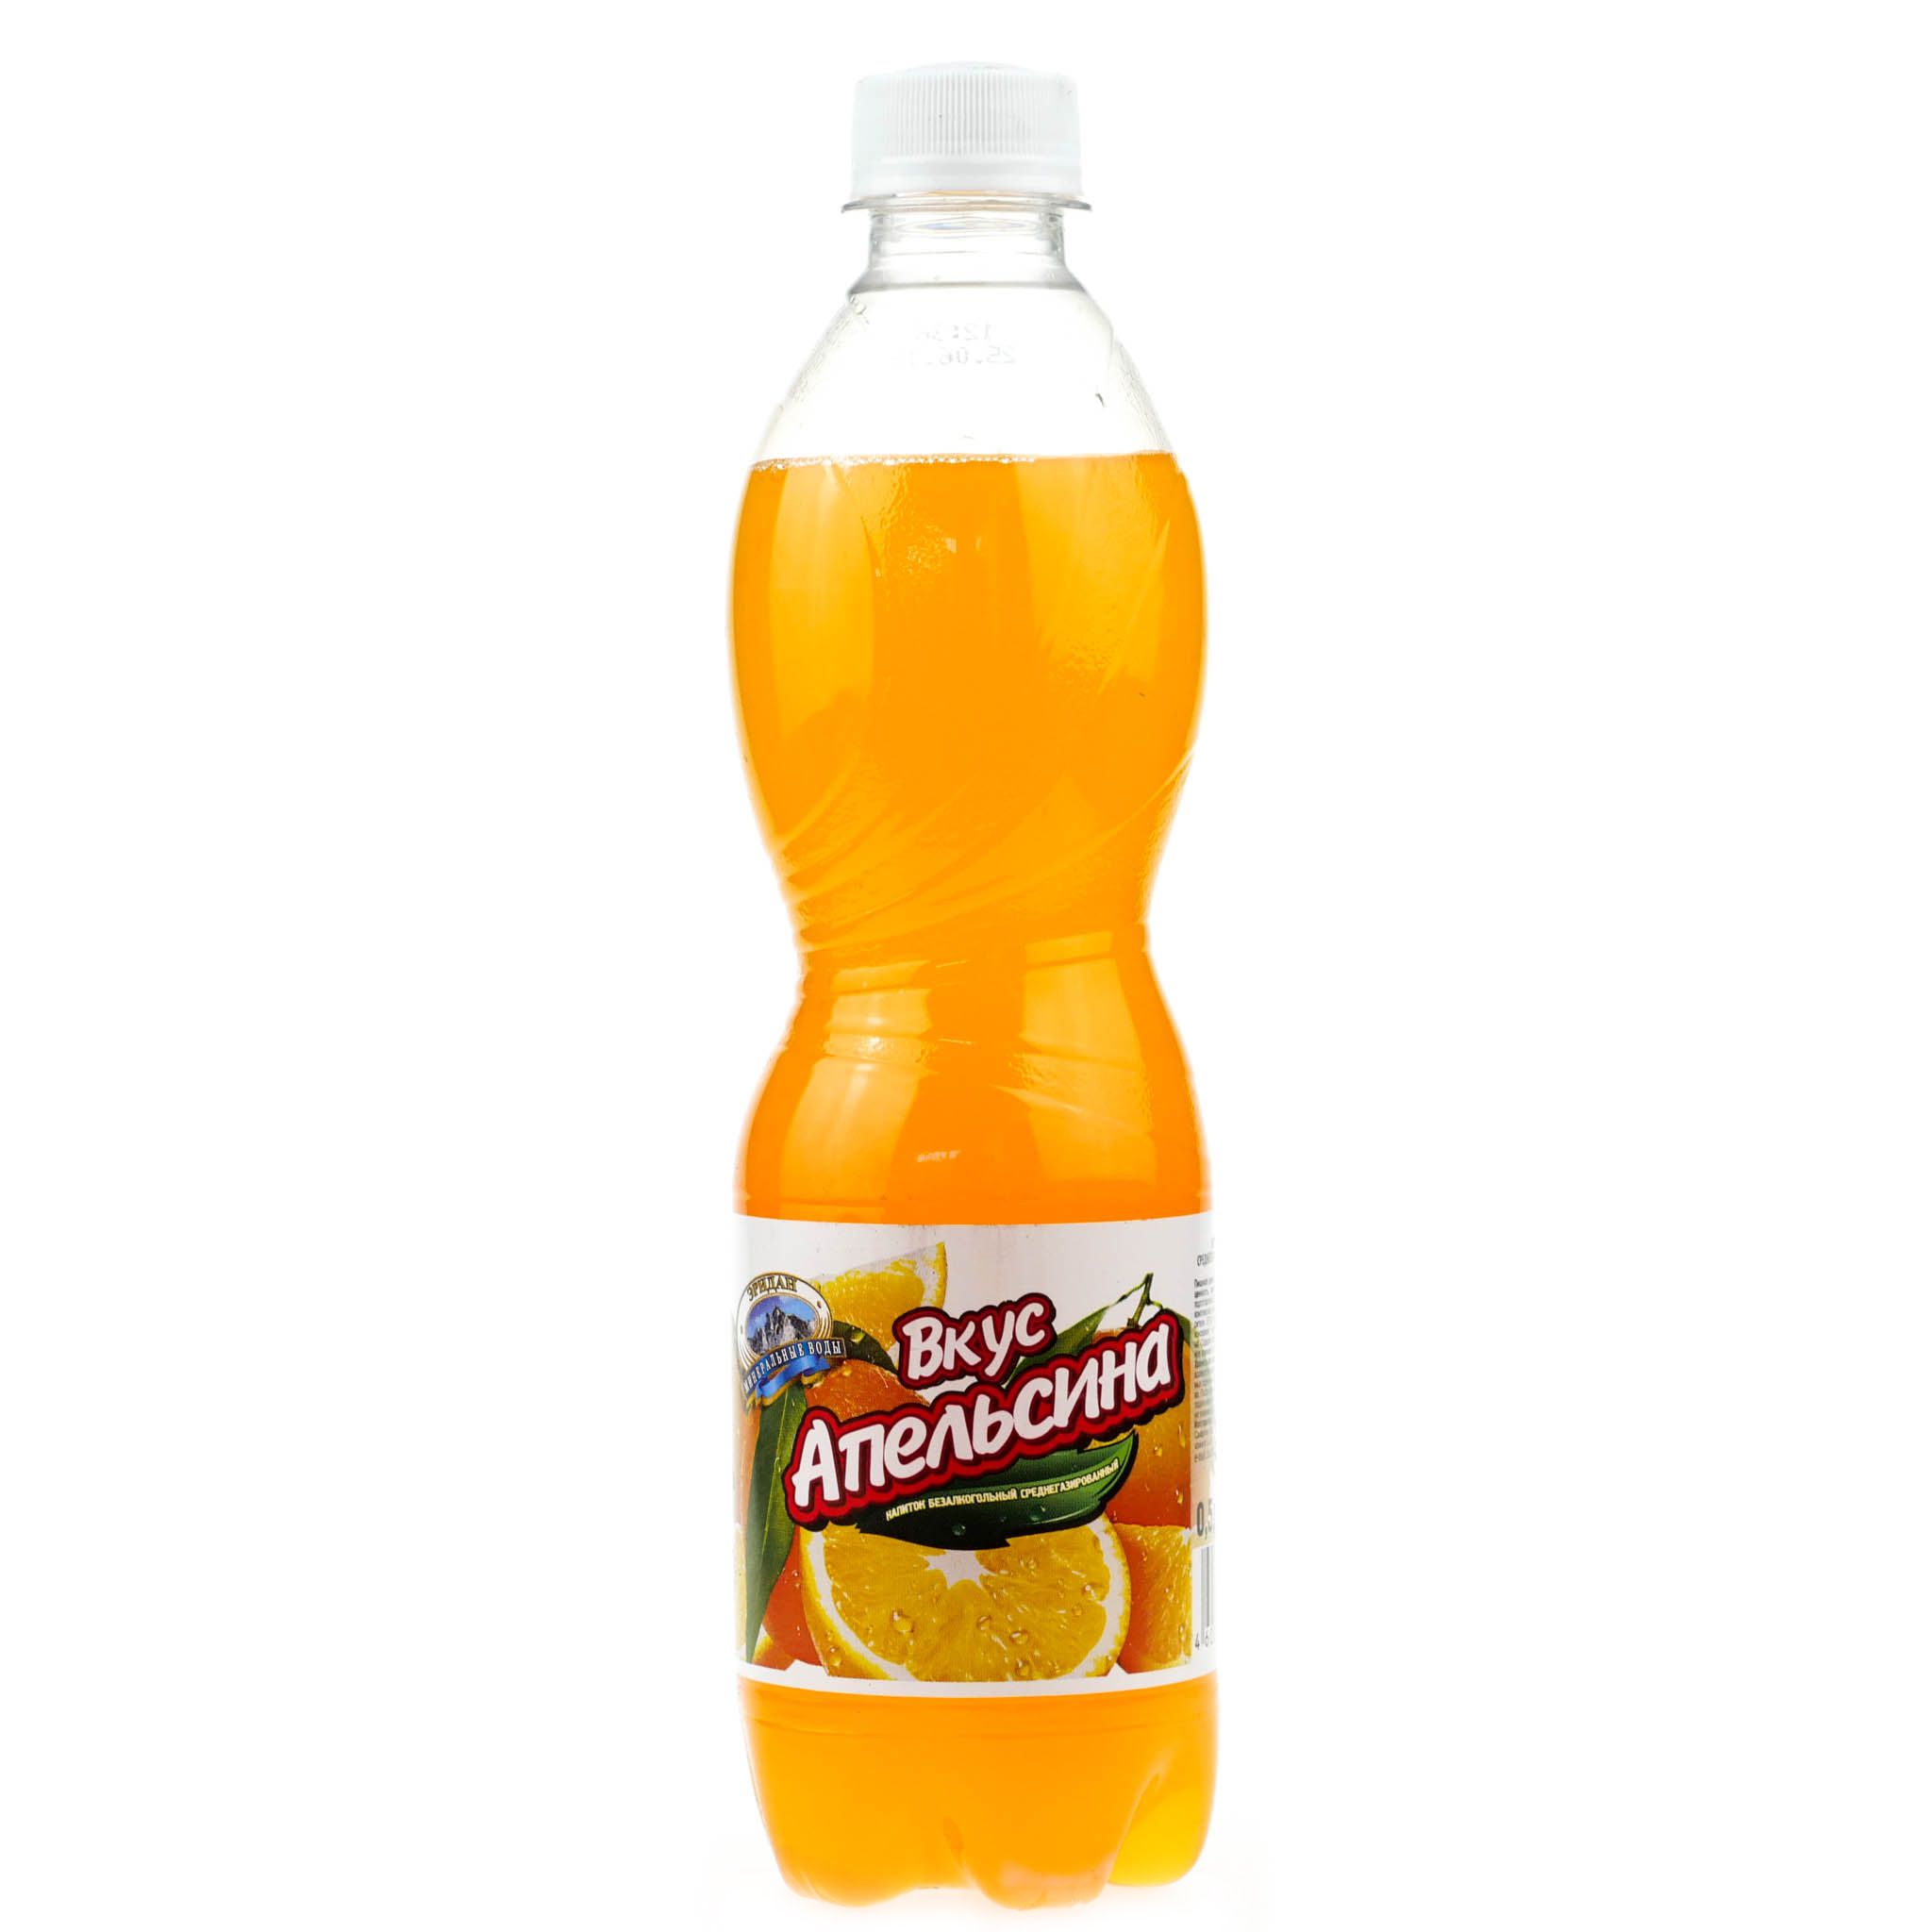 Апельсиновая газированная вода. Лимонад Эльбрусинка апельсин 1,5л ПЭТ. Orange 2 л лимонад апельсин. Напиток безалкогольный апельсин Luxor 1,5л. ГАЗ напиток вкус апельсина 0,5л.